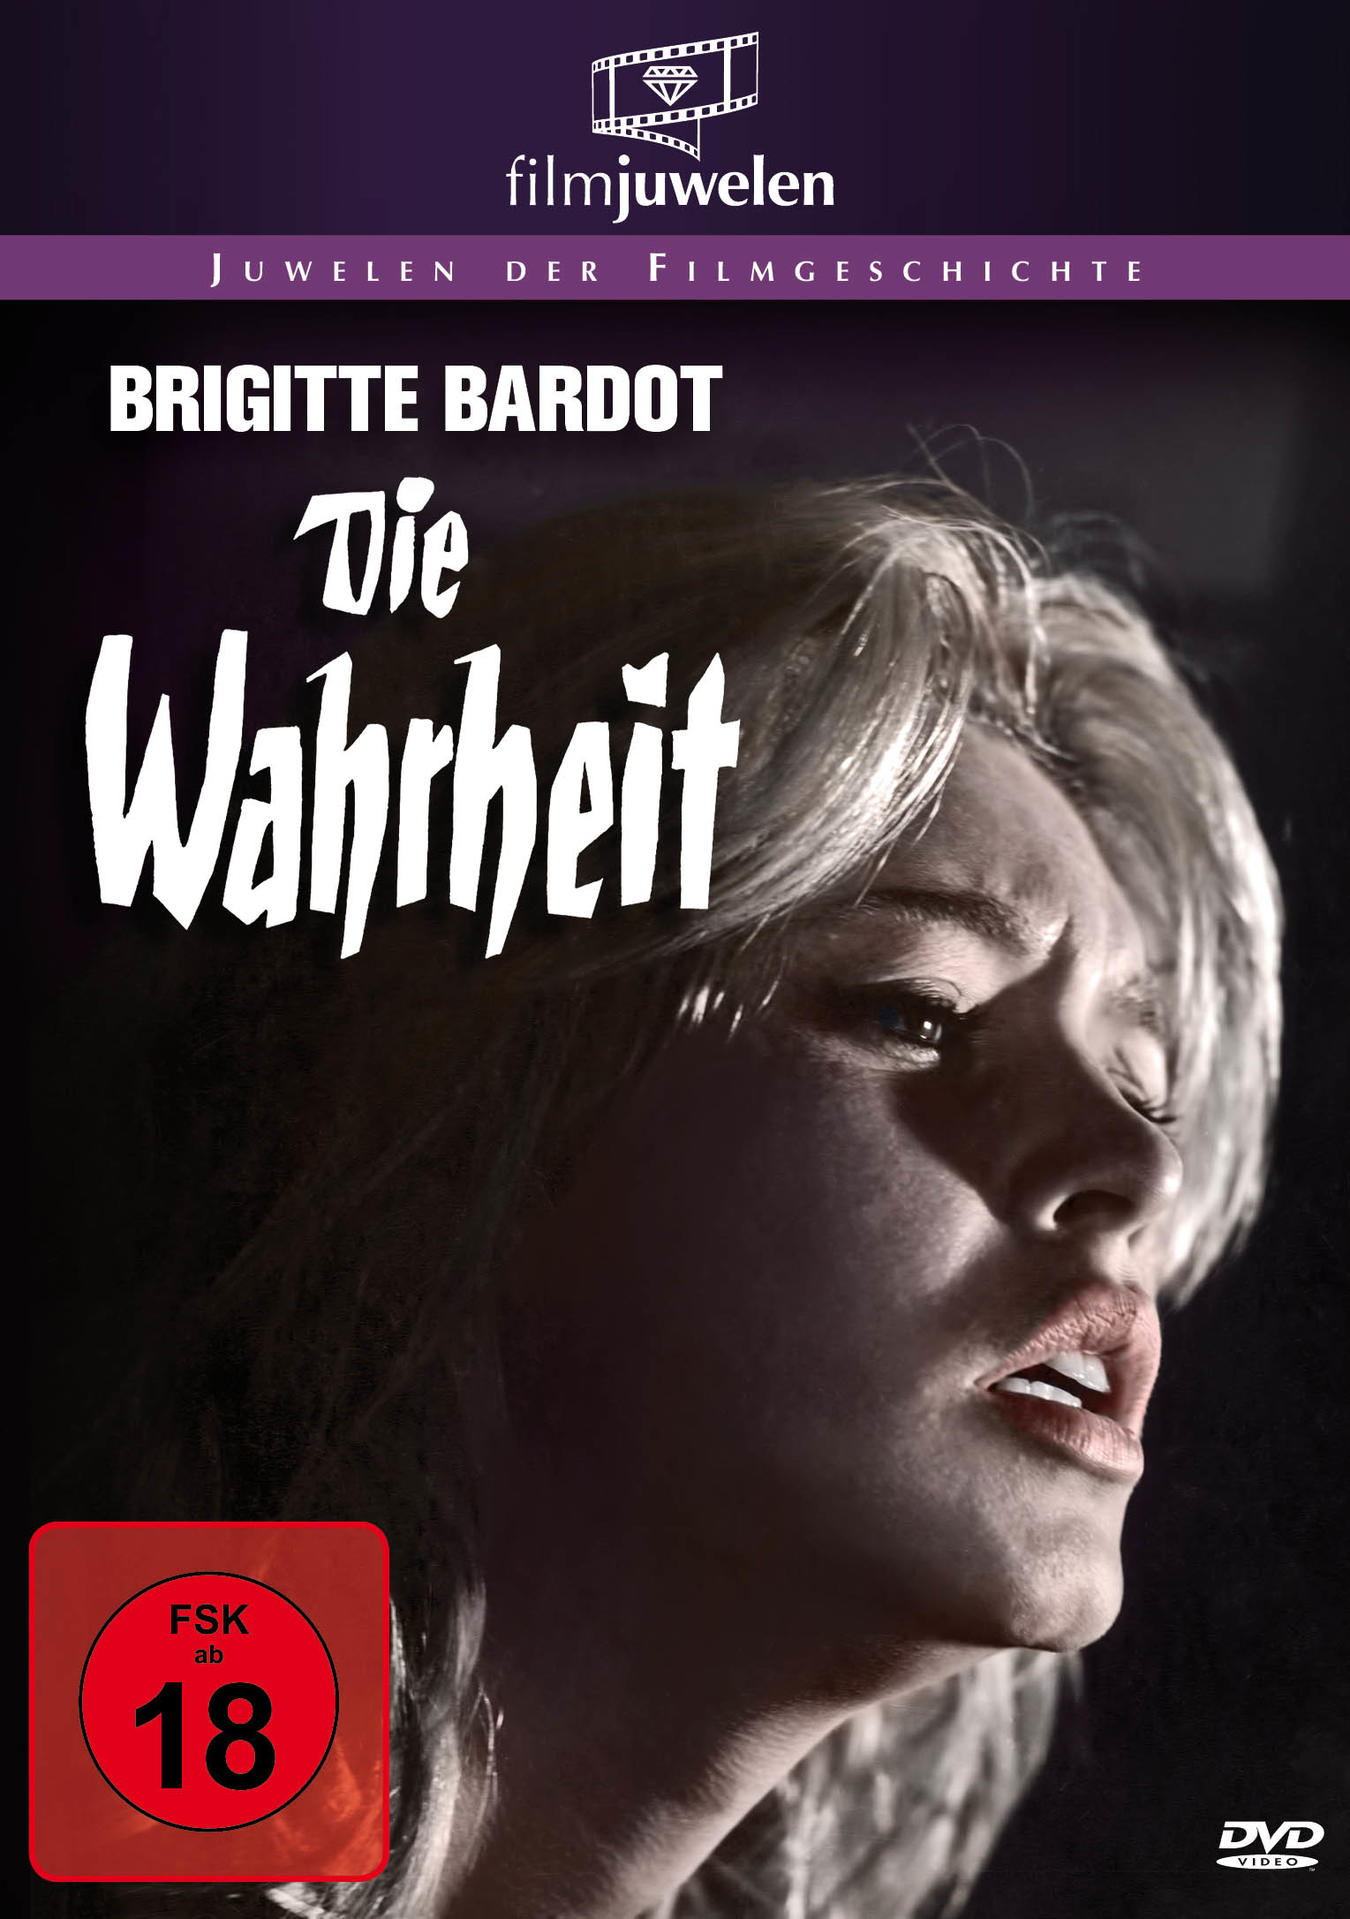 Die Wahrheit (Brigitte DVD Bardot)